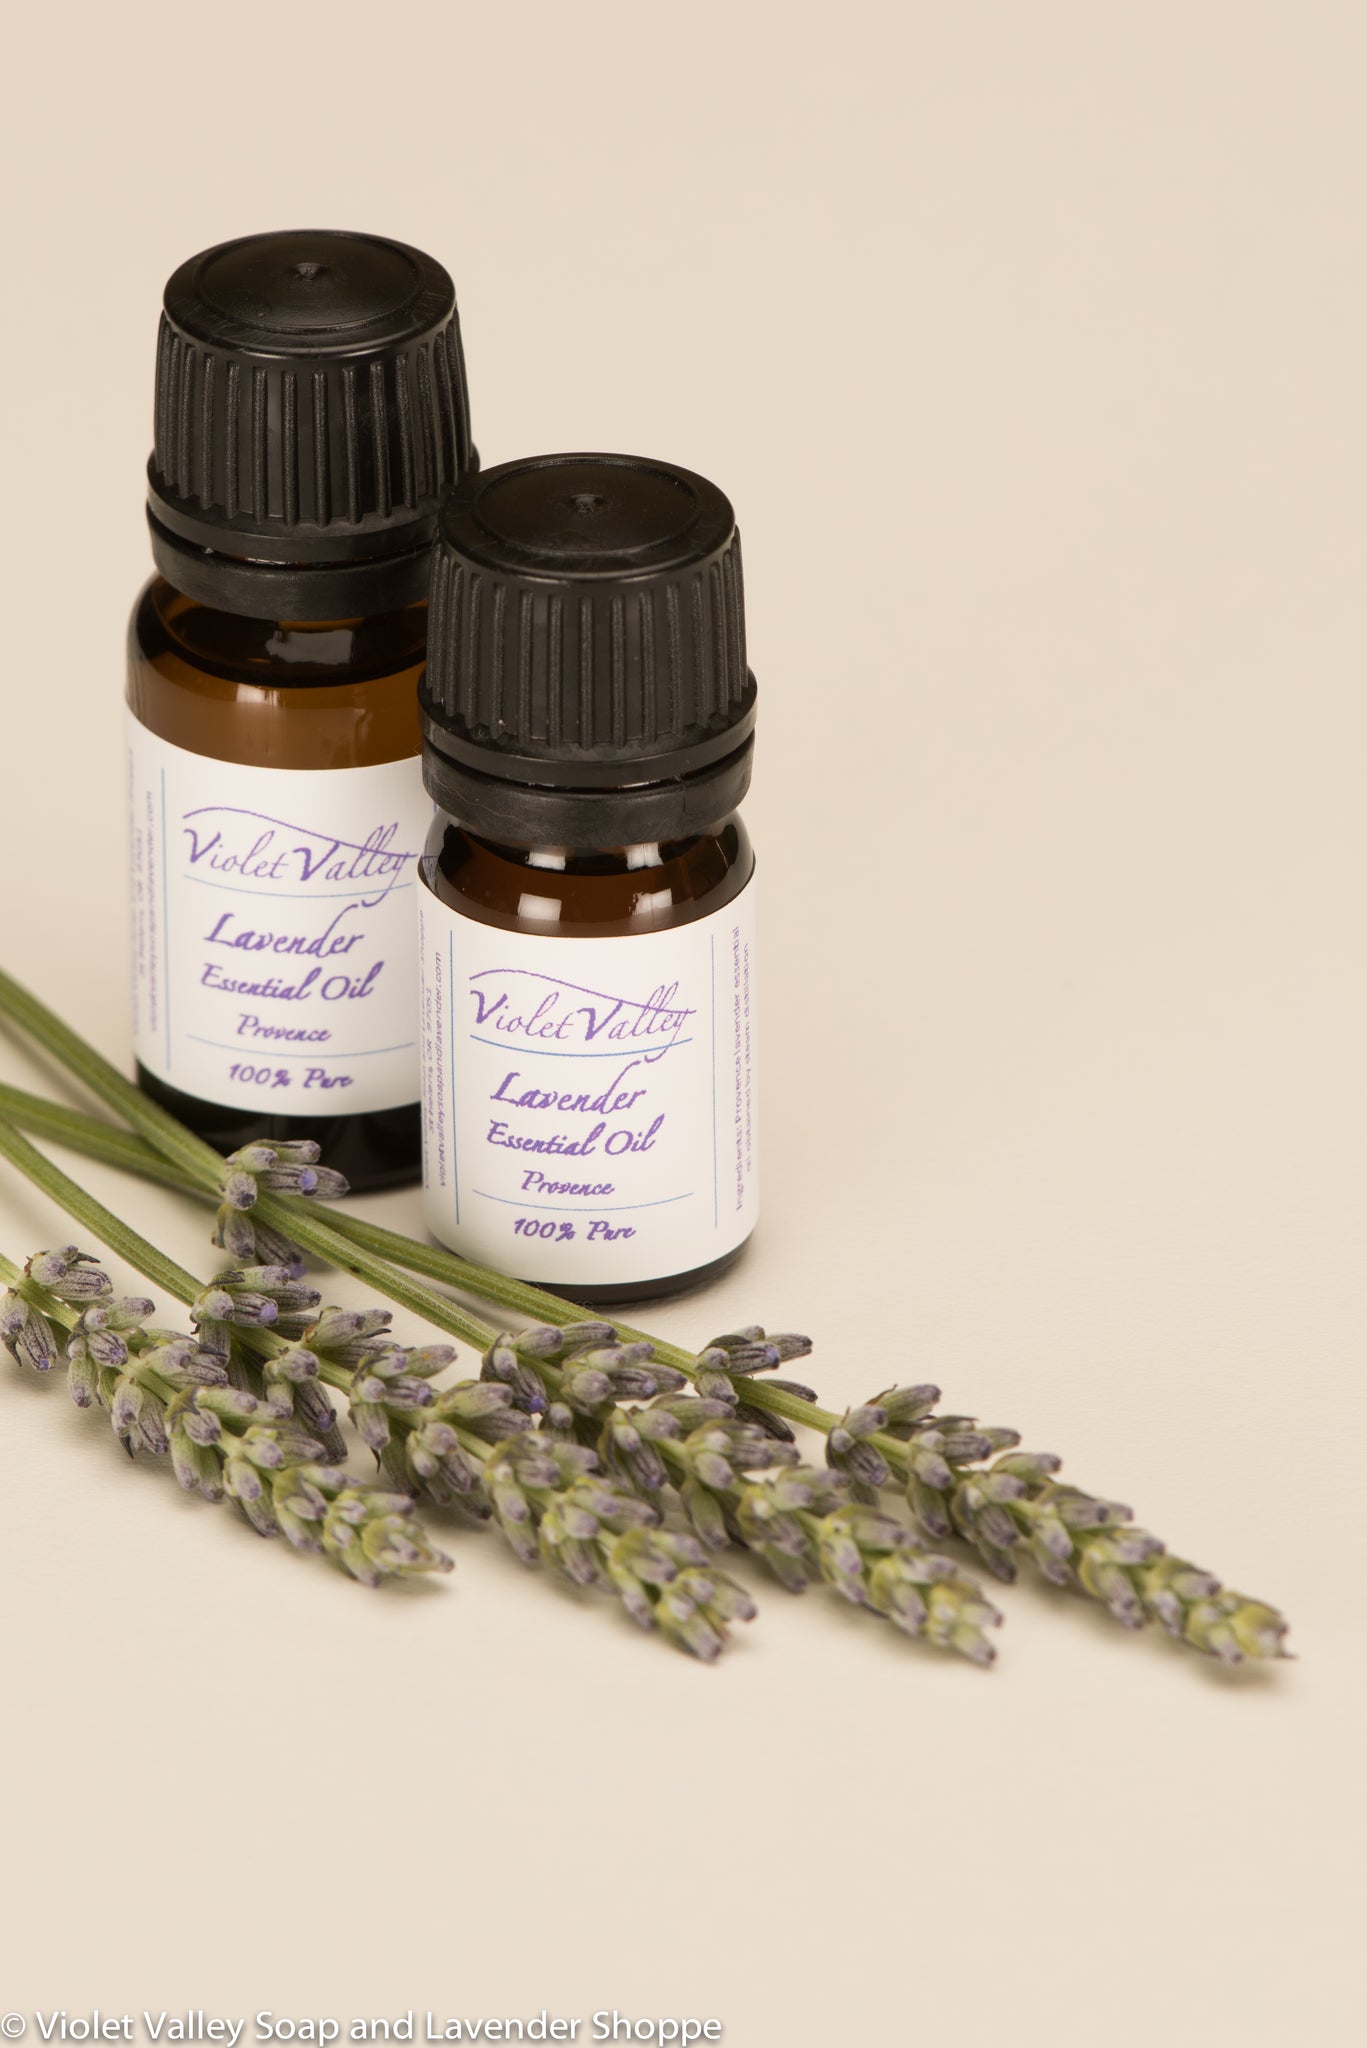 Lavender Essential Oil, Provence | Violet Valley